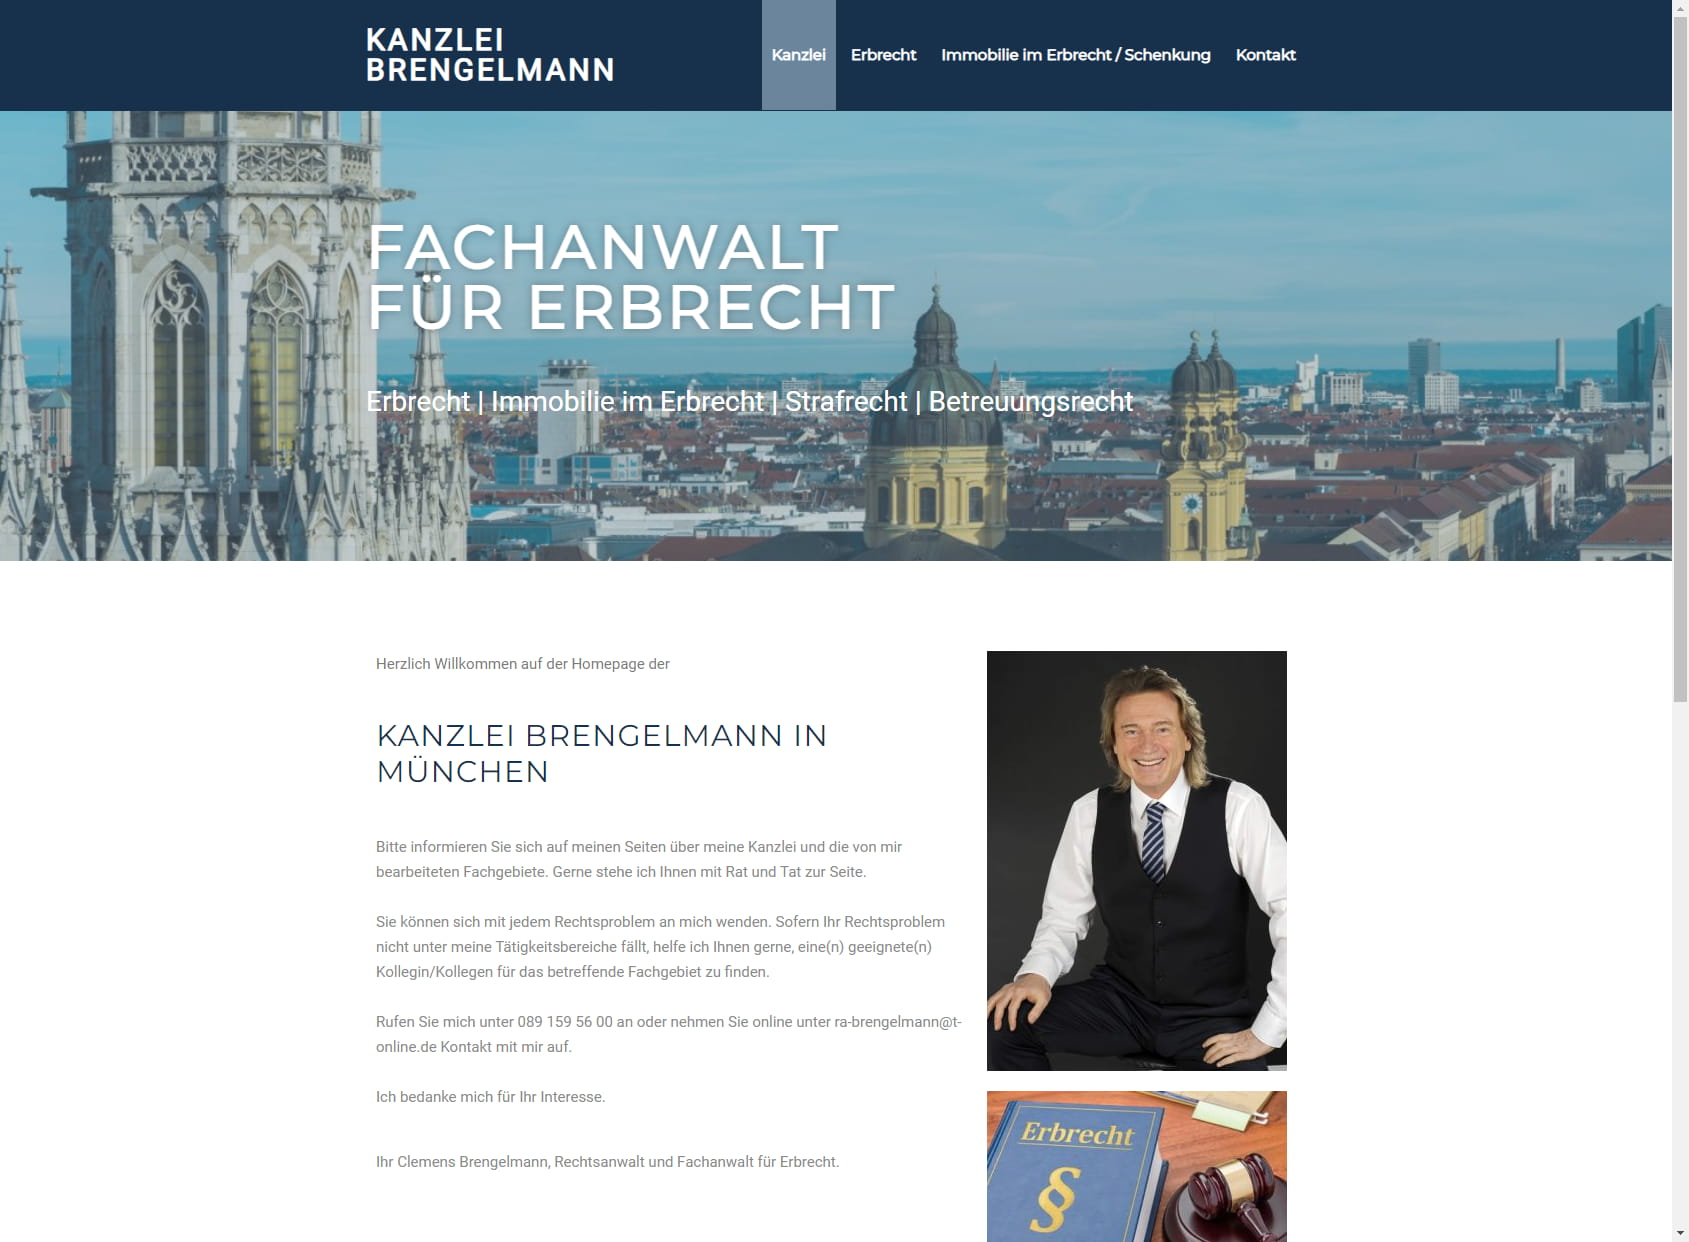 Rechtsanwalt Clemens Brengelmann | Erbrecht Familienrecht Verkehrsrecht | München